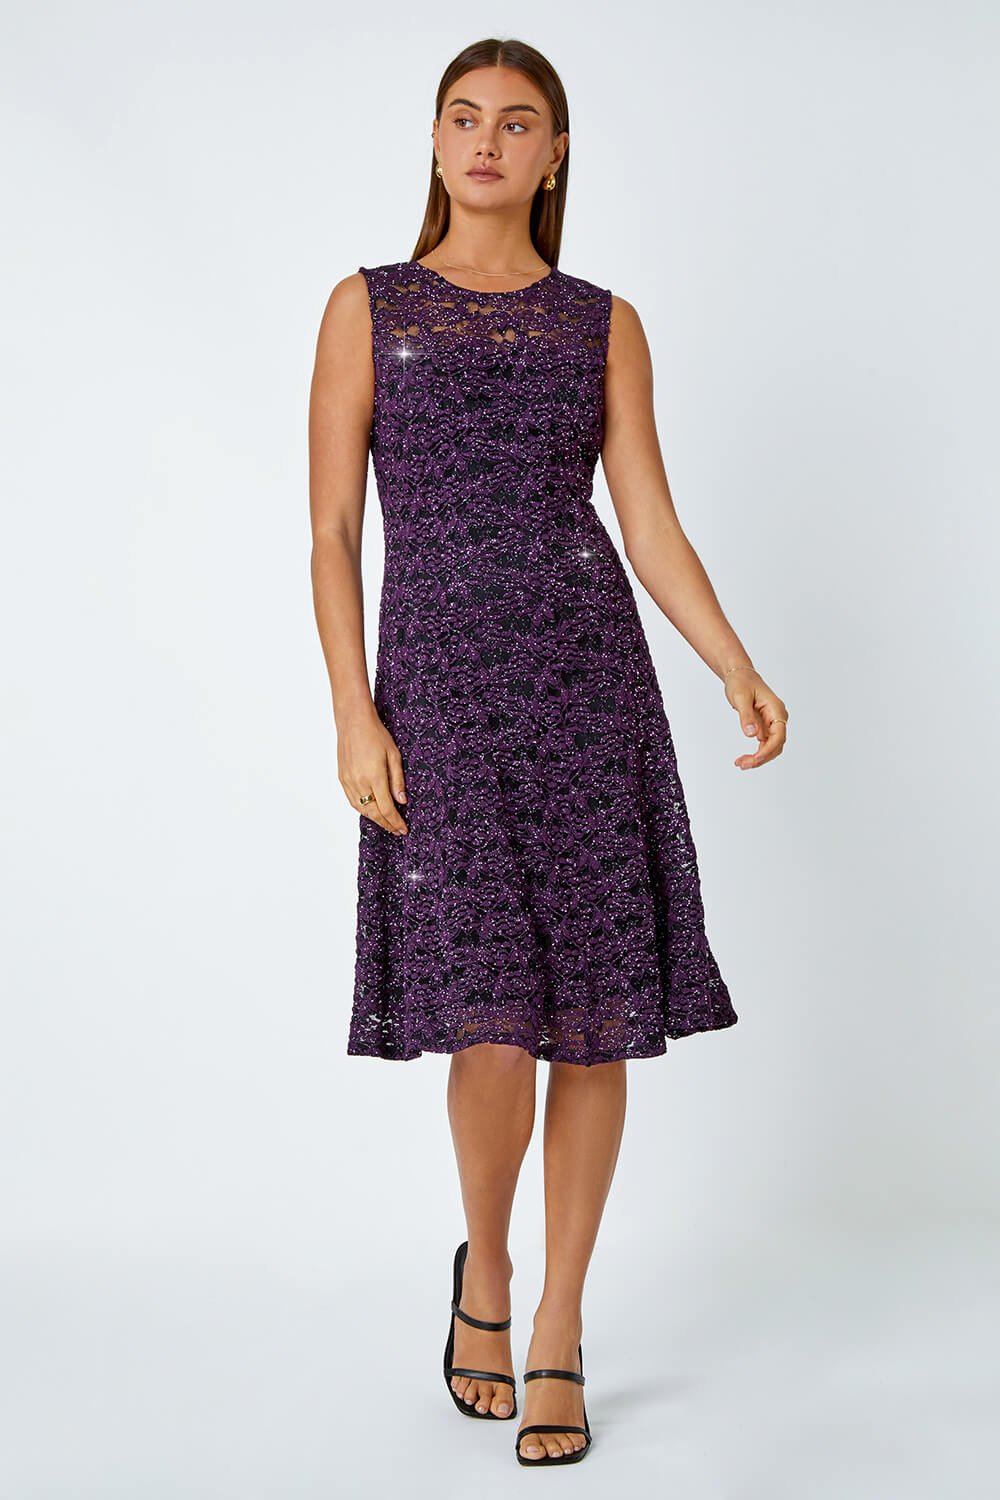 Purple Sleeveless Glitter Lace Stretch Dress, Image 2 of 5